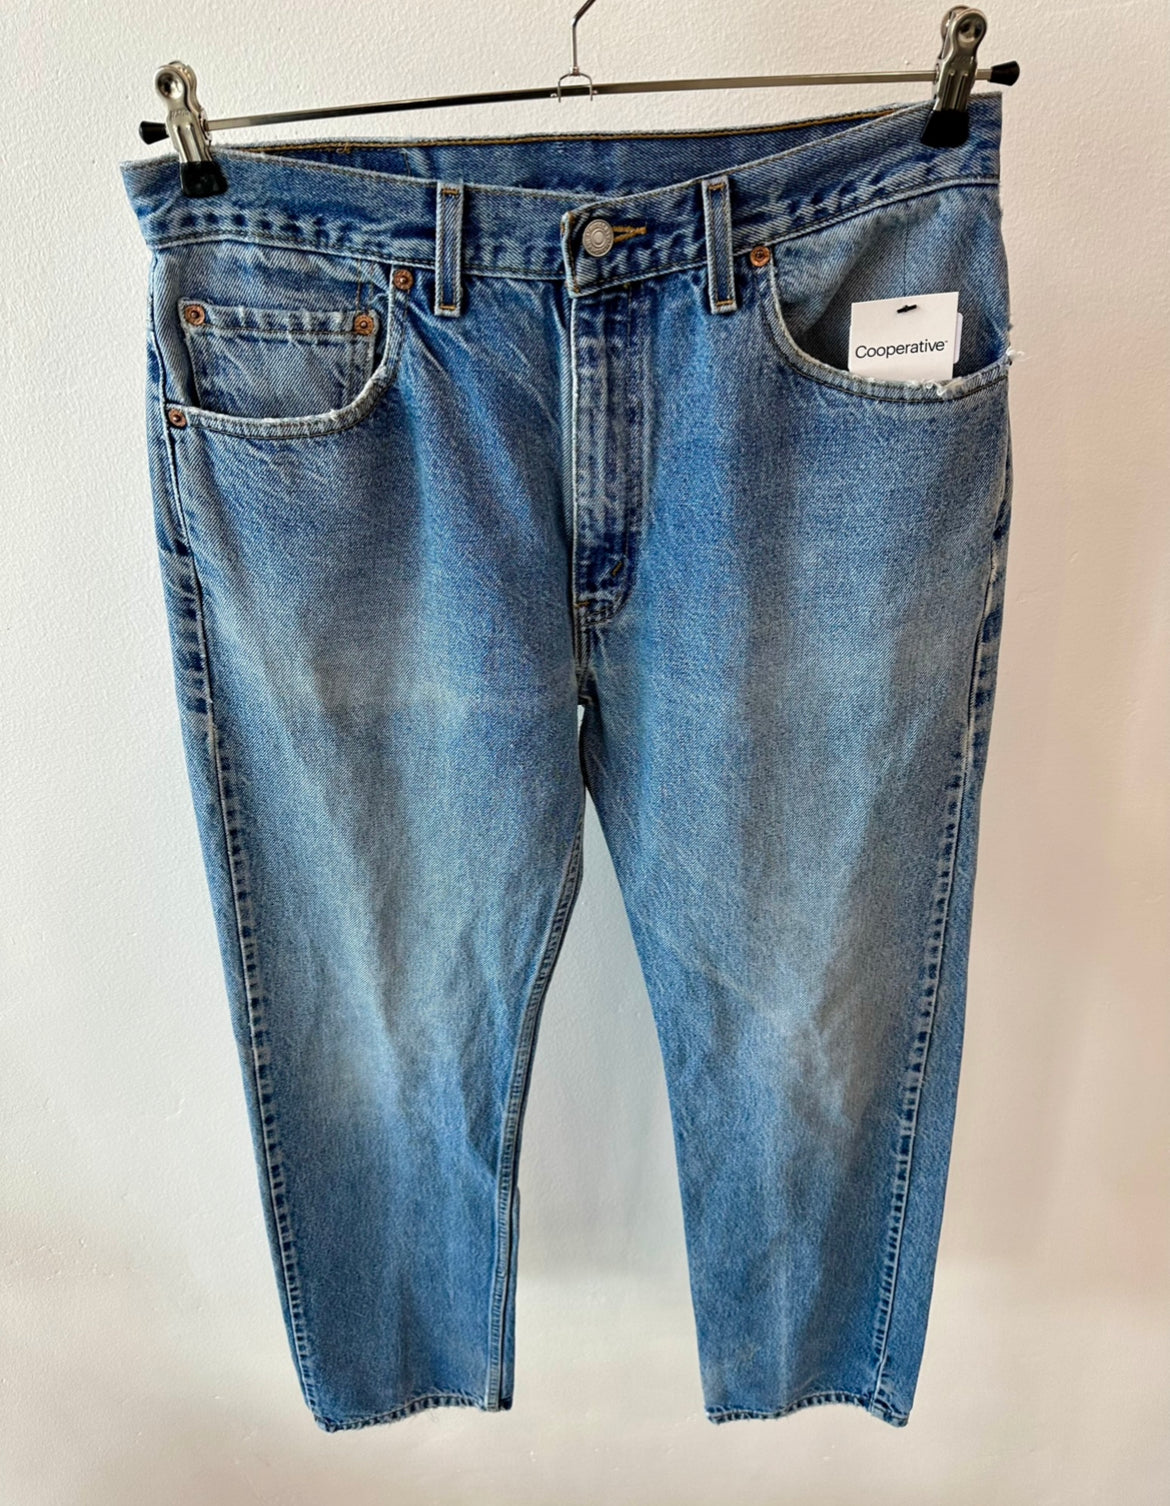 Vintage Levis 505 Jeans 34 x 34